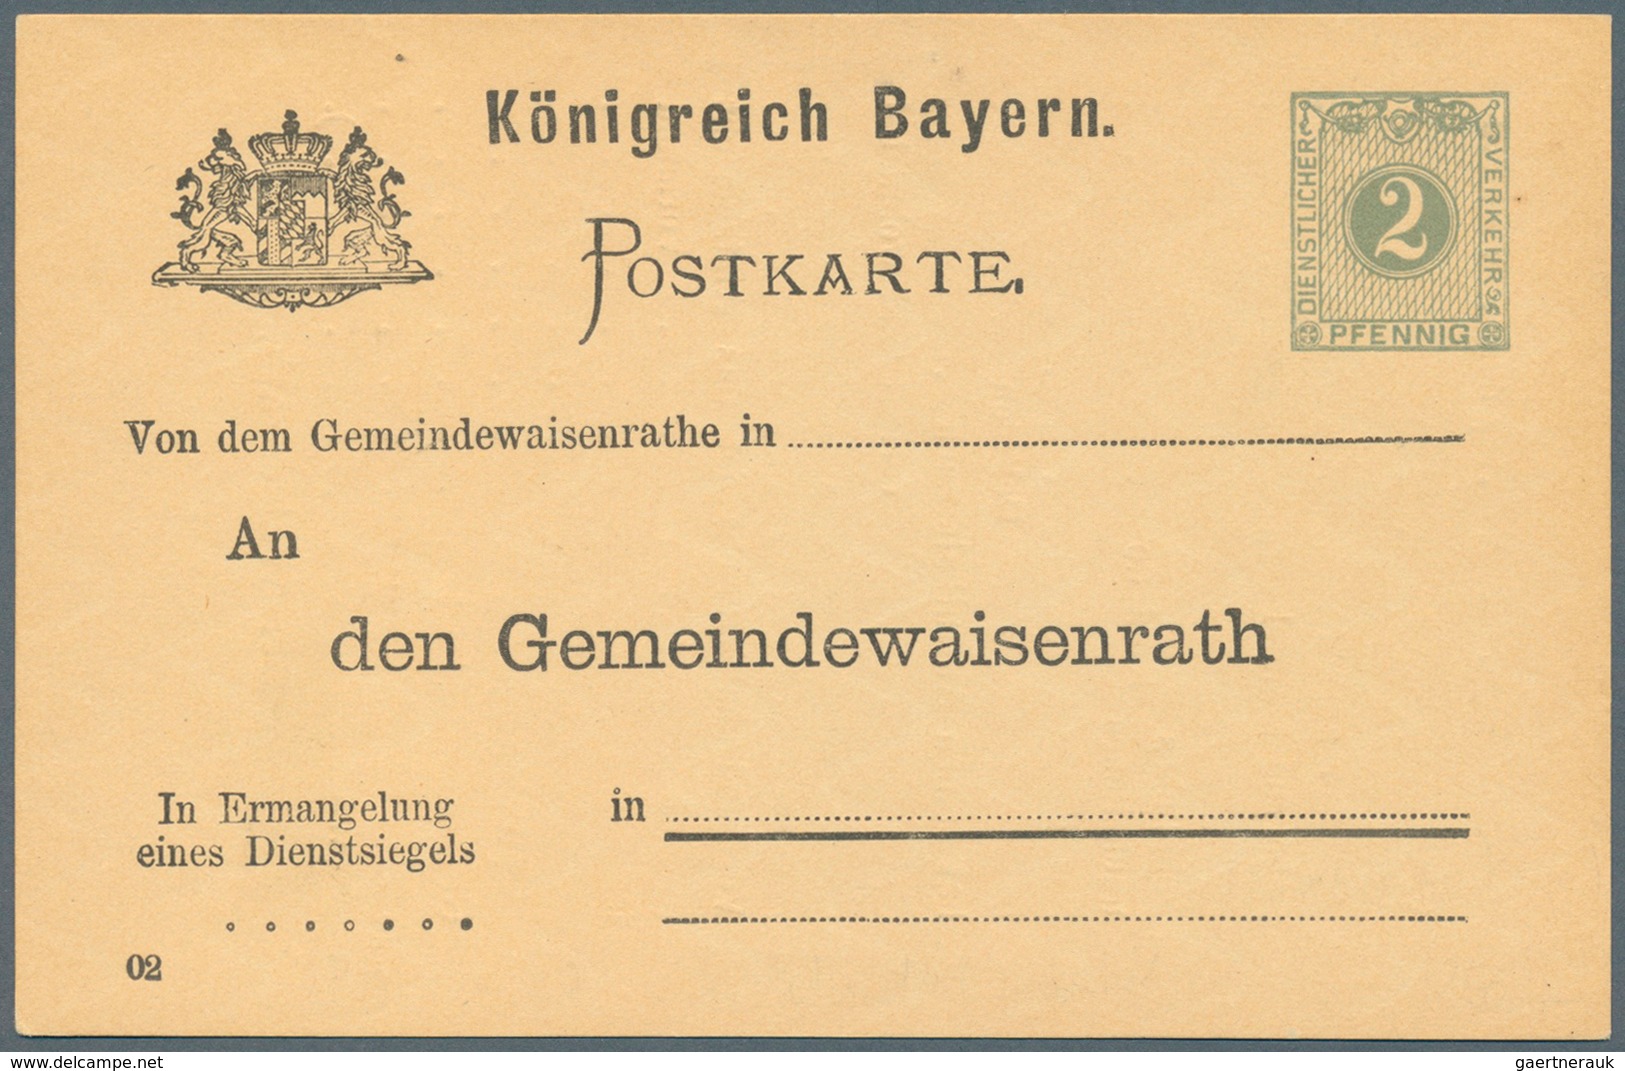 31235 Bayern - Ganzsachen: 1876/1920. Sammlung von 47 ungebrauchten Postkarten. Dabei viele bessere Stücke